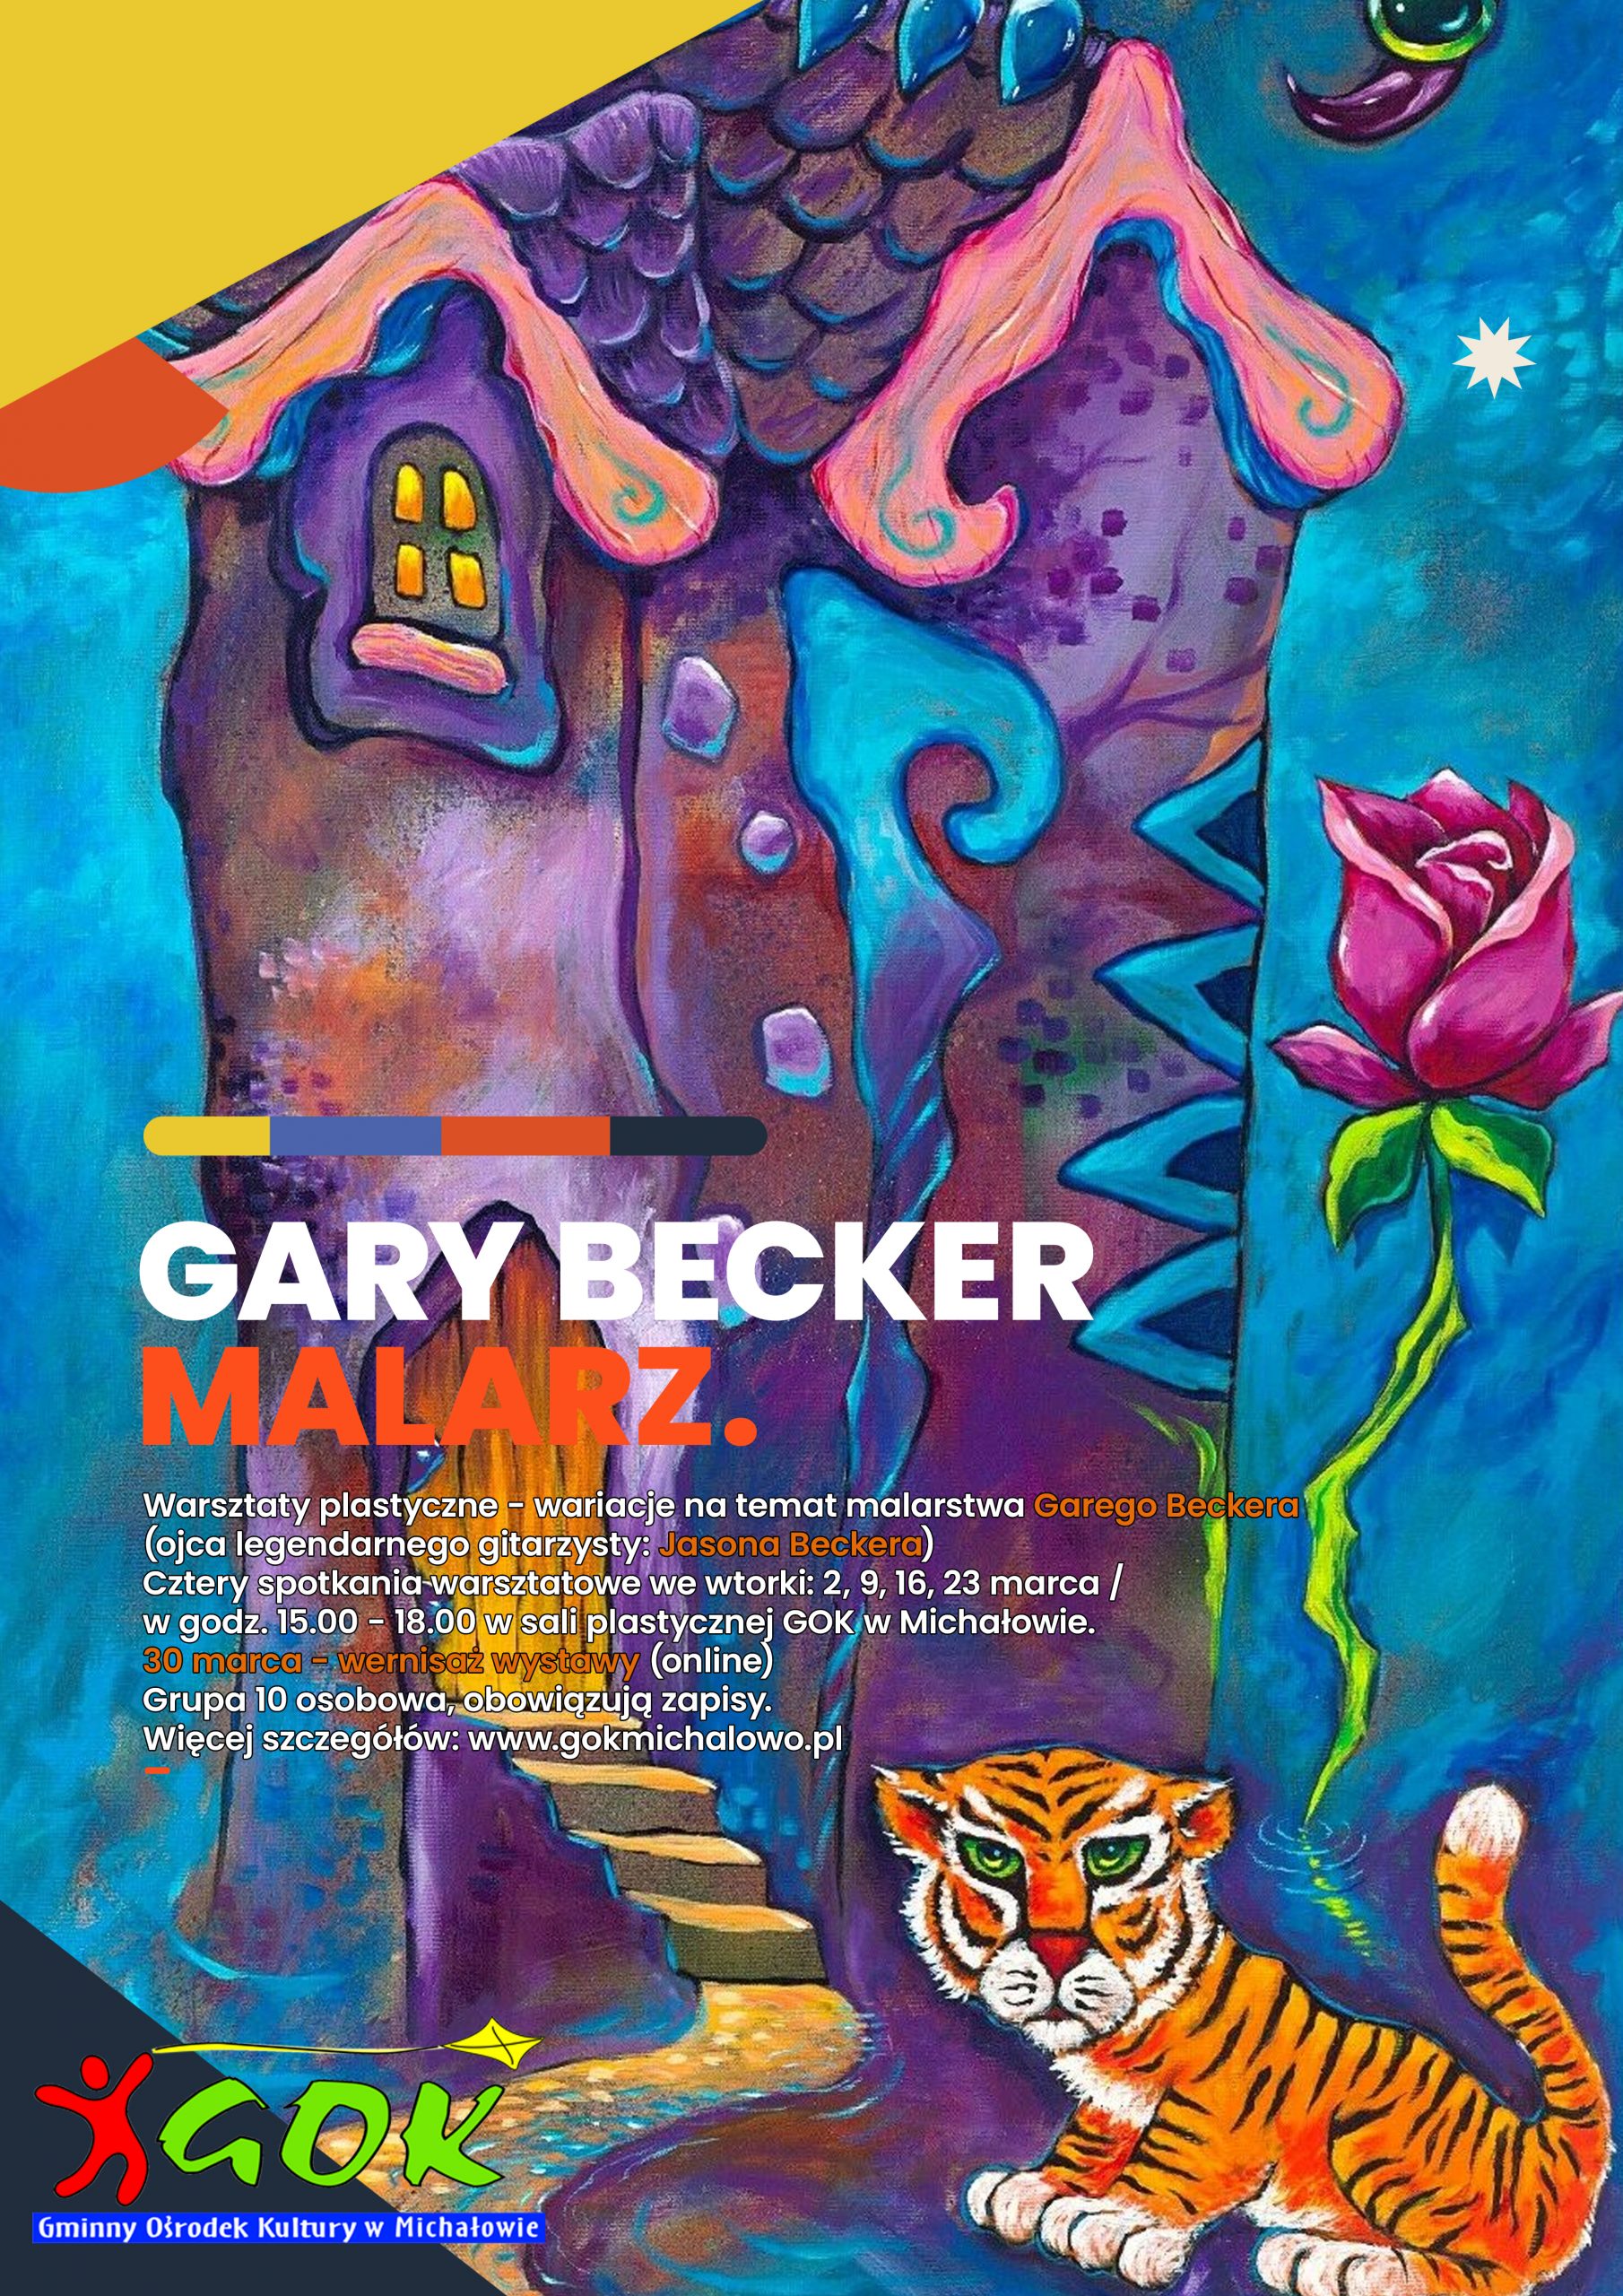 Gary Becker warsztaty plastyczne